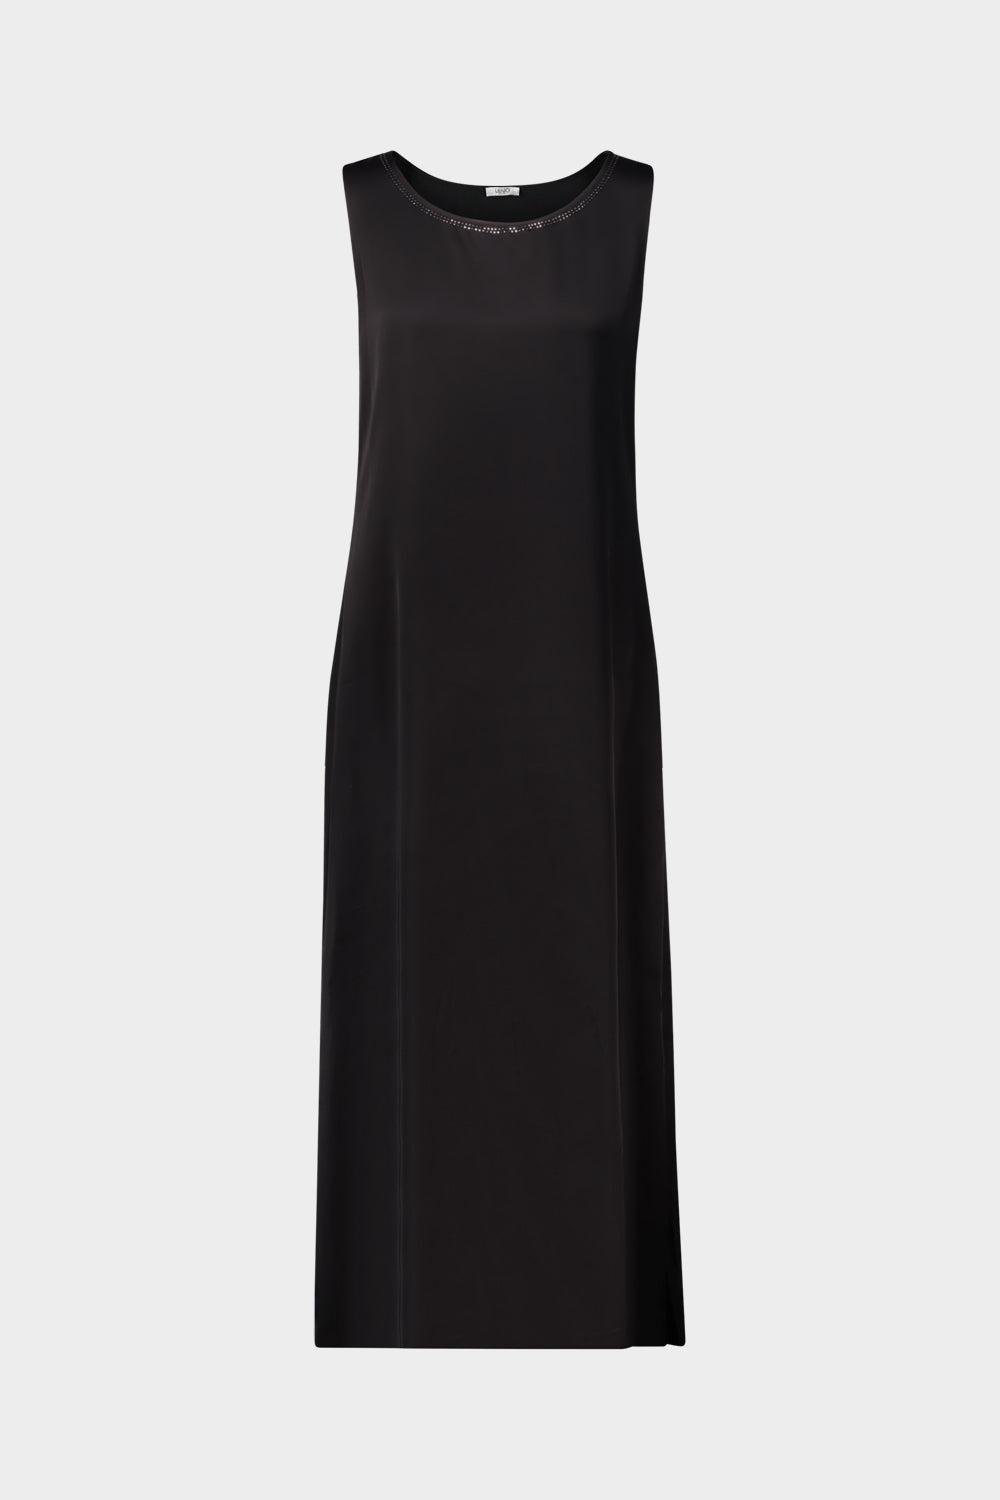 שמלת אי ליין לנשים אבני חן LIU JO Vendome online | ונדום .